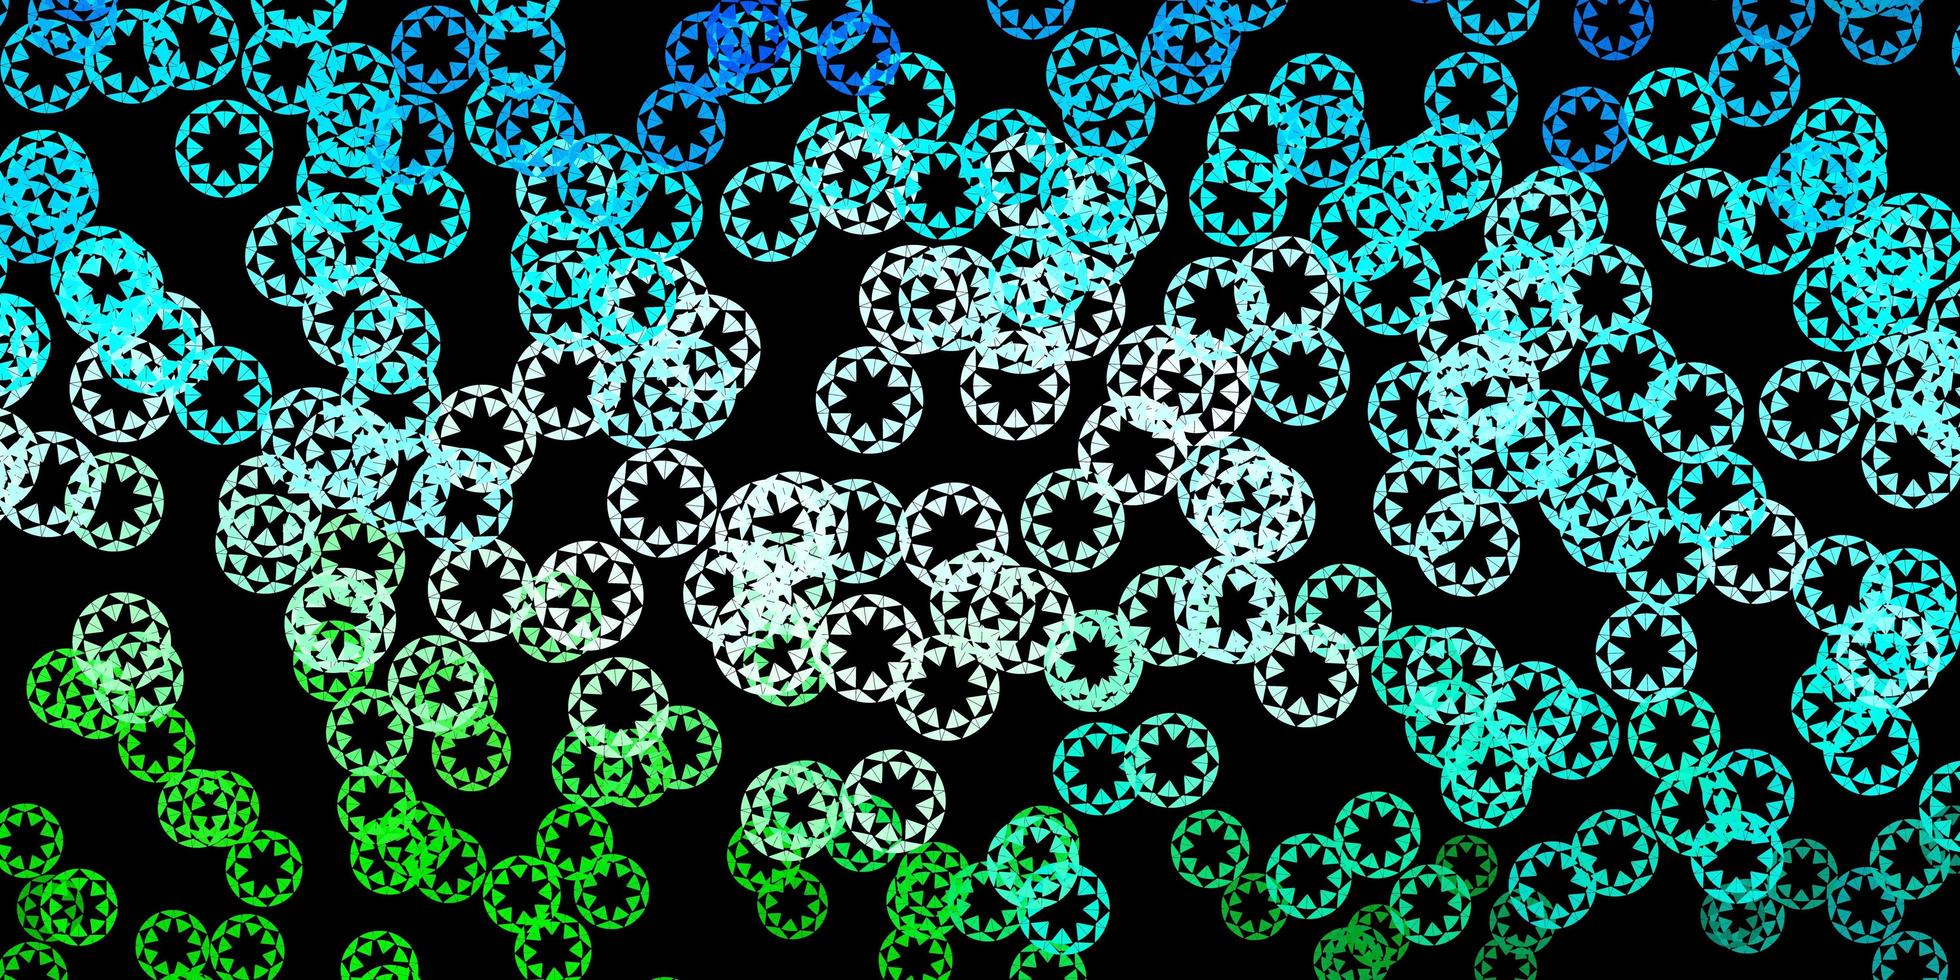 dunkelblaues, grünes Layout mit Kreisformen. vektor